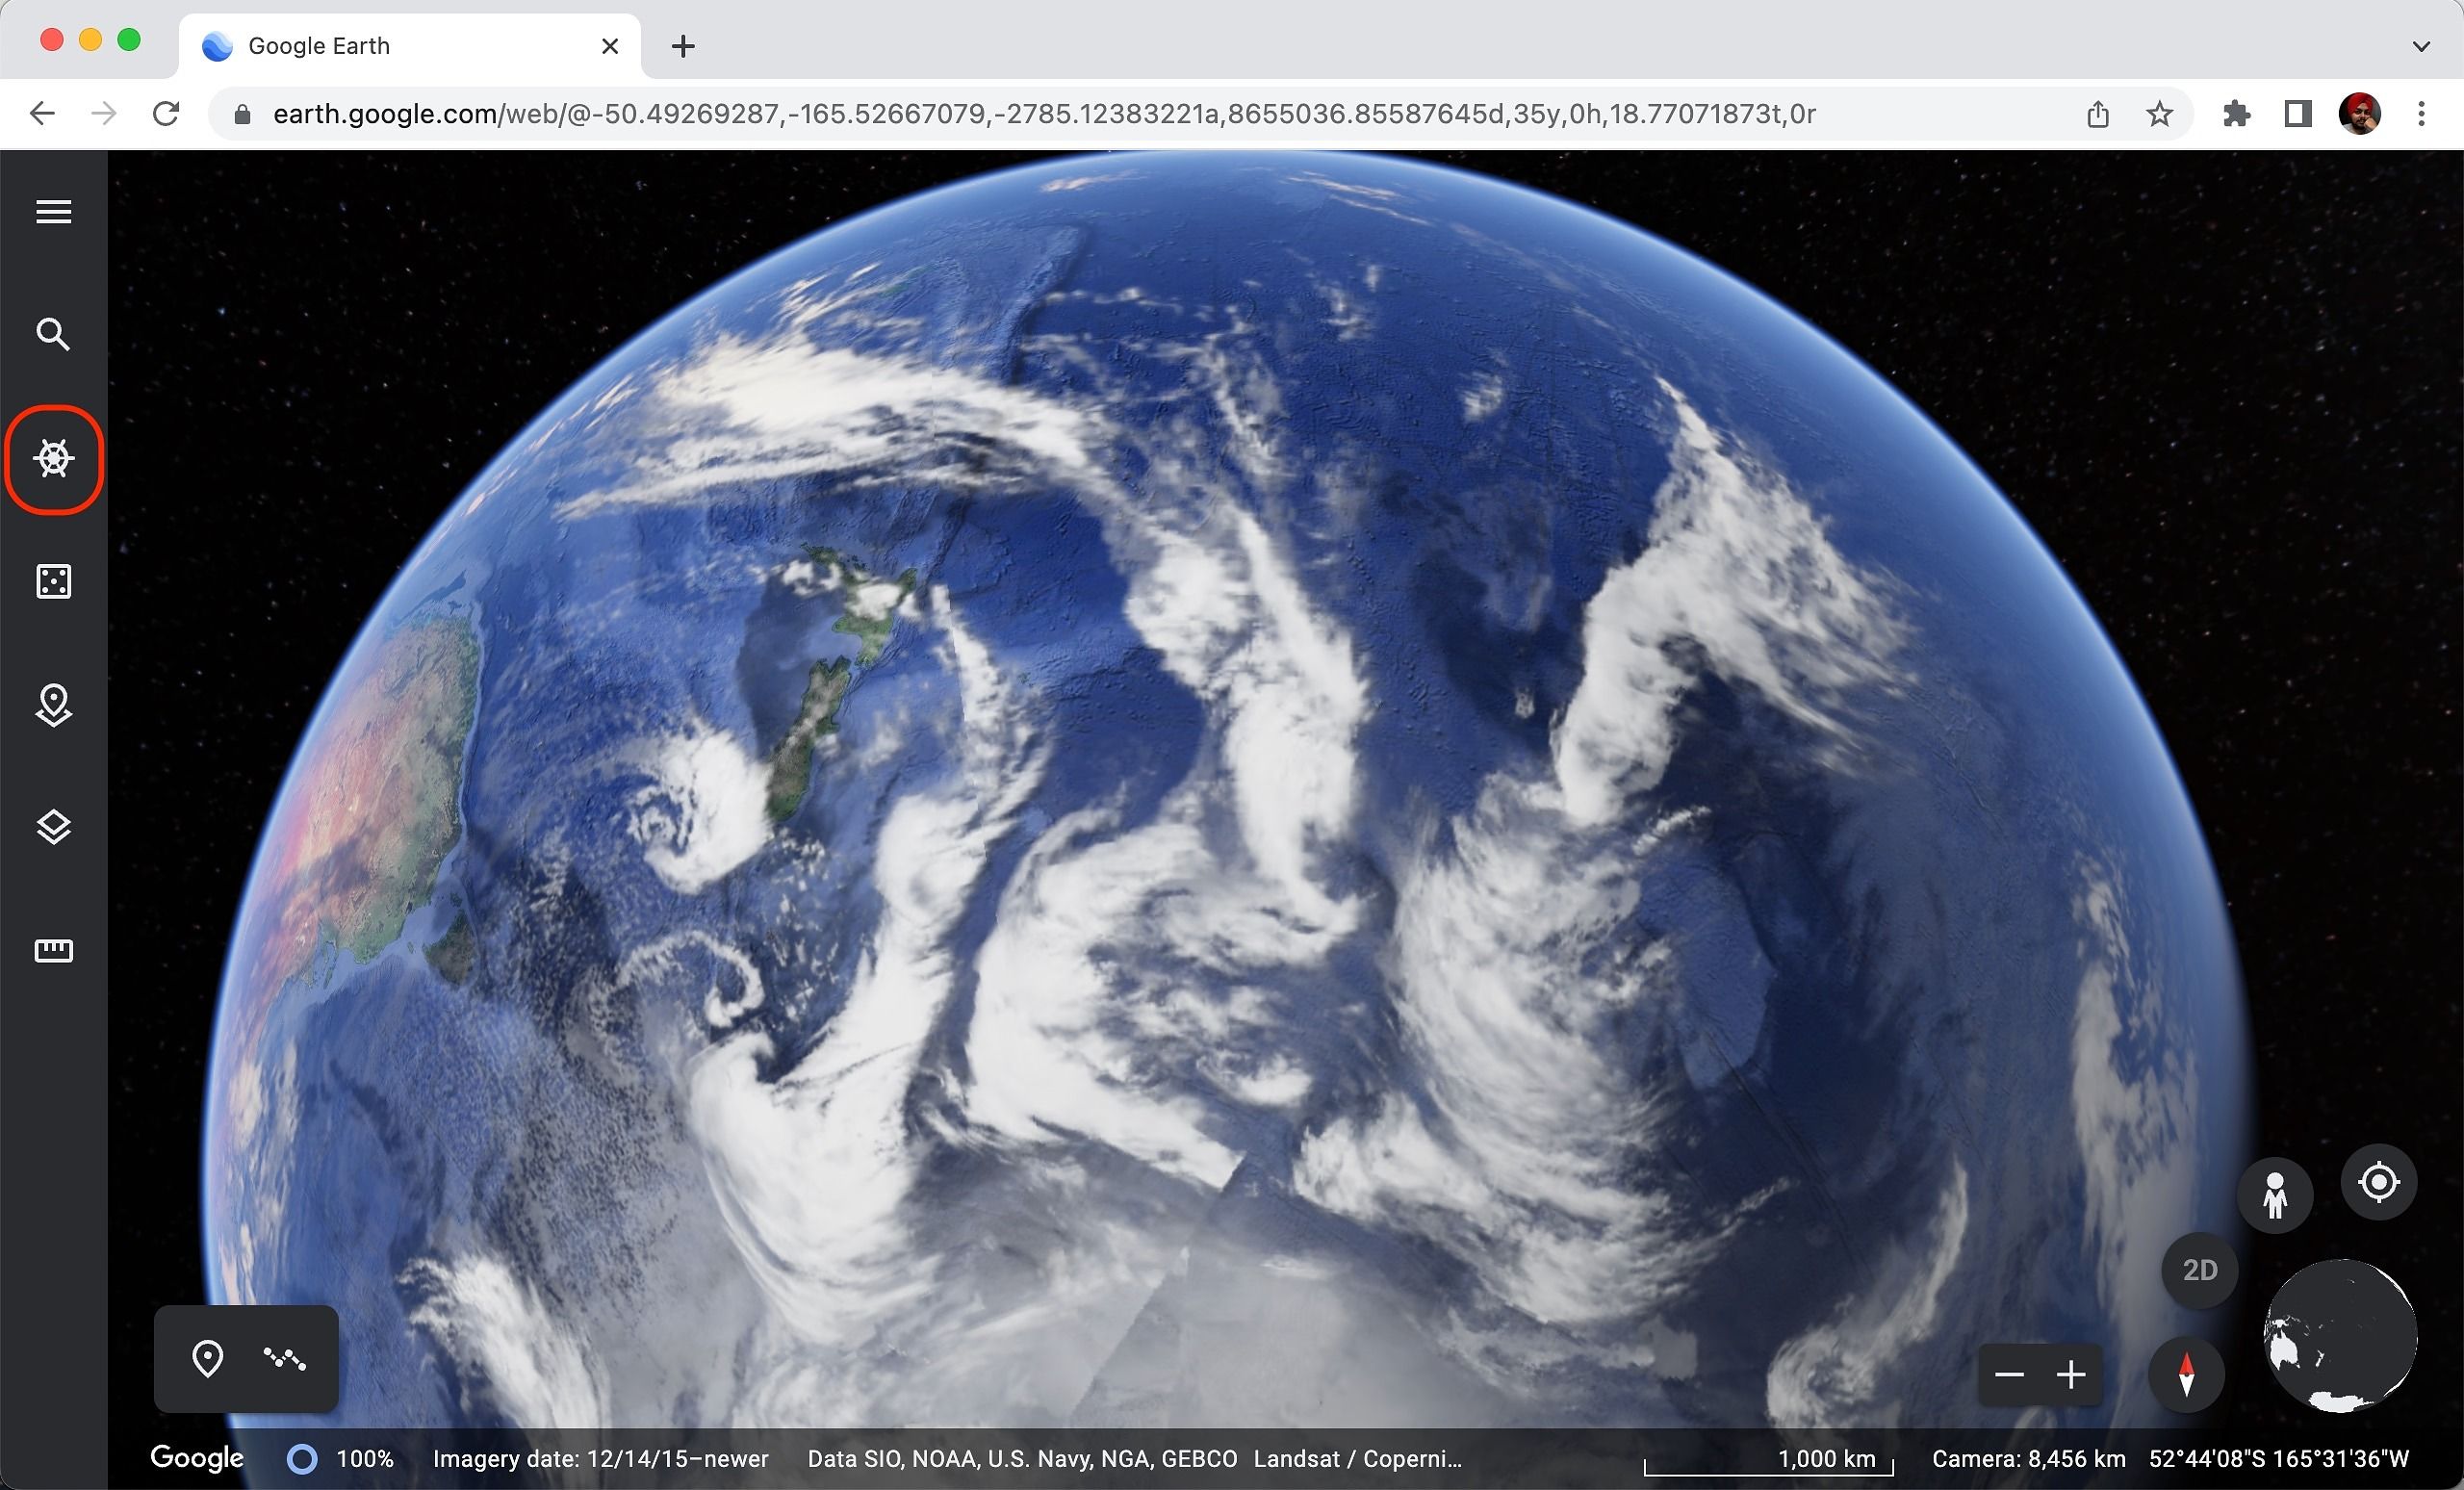 Selecionando o ícone do Voyager no aplicativo da web do Google Earth